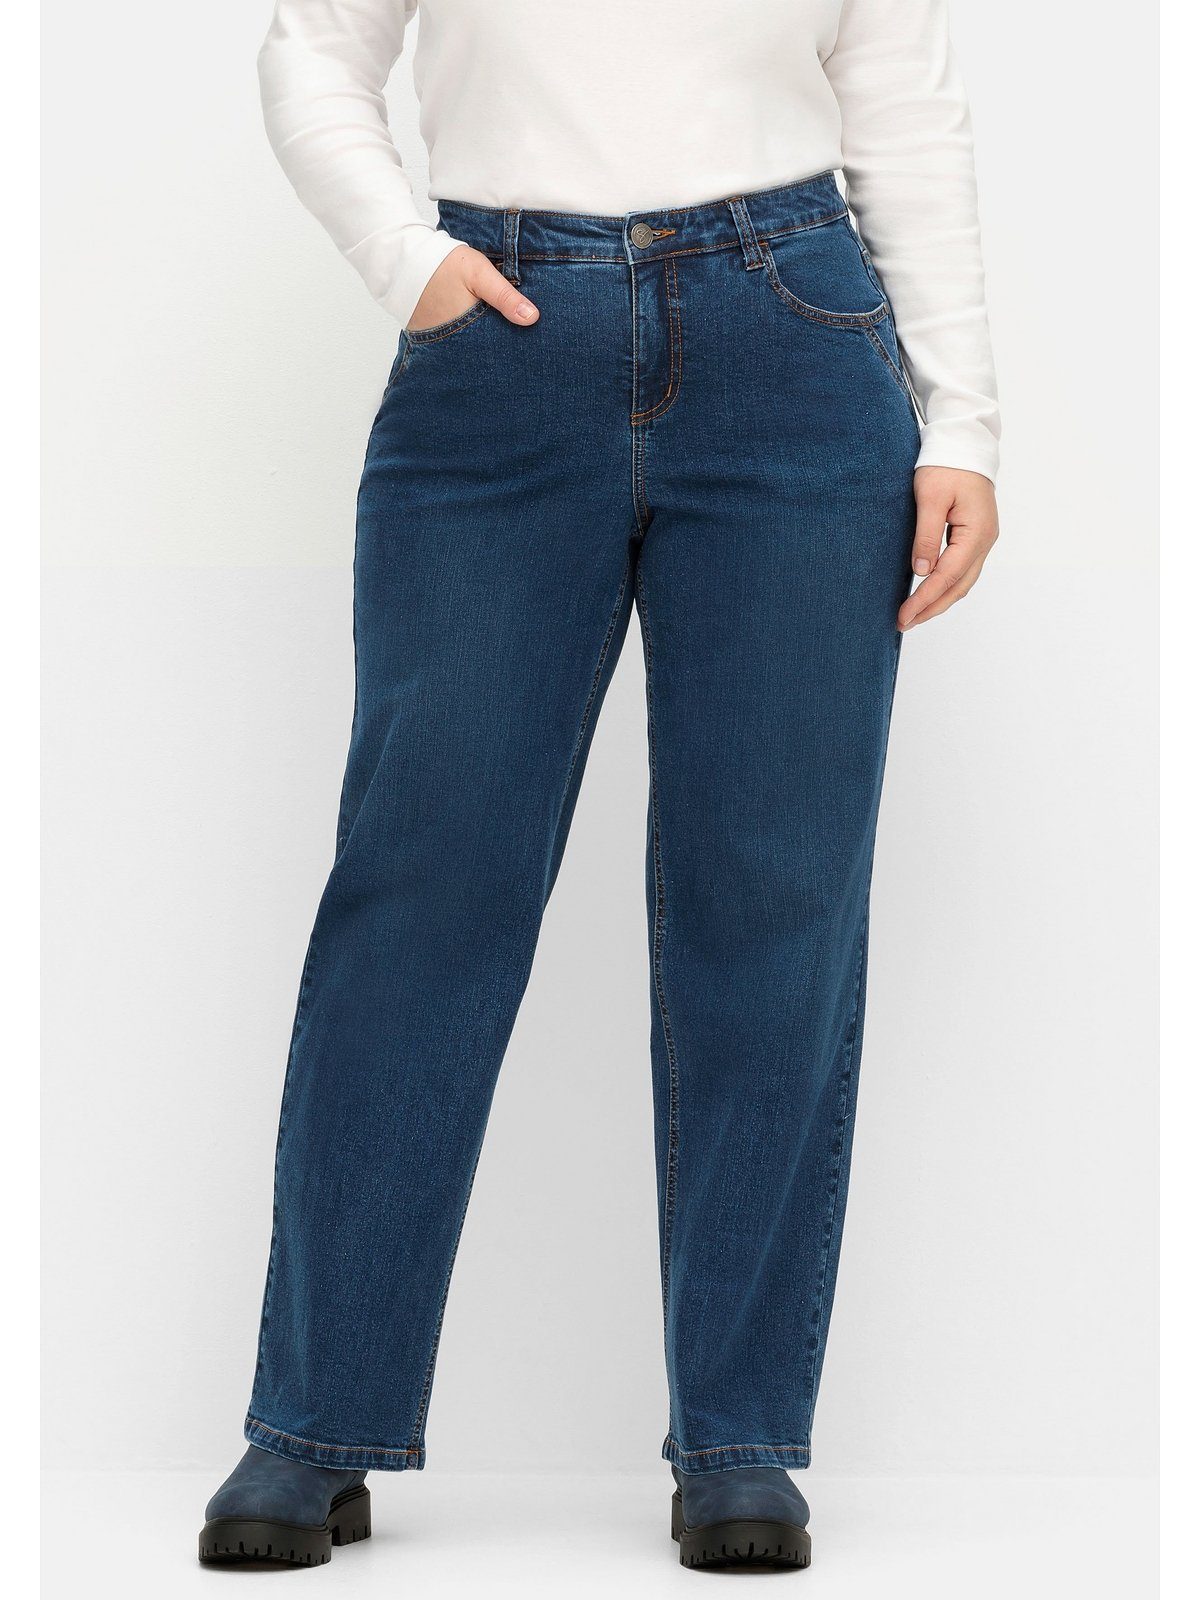 Sheego Weite Jeans Große kräftige Denim ELLA blue Größen für Waden dark Oberschenkel und